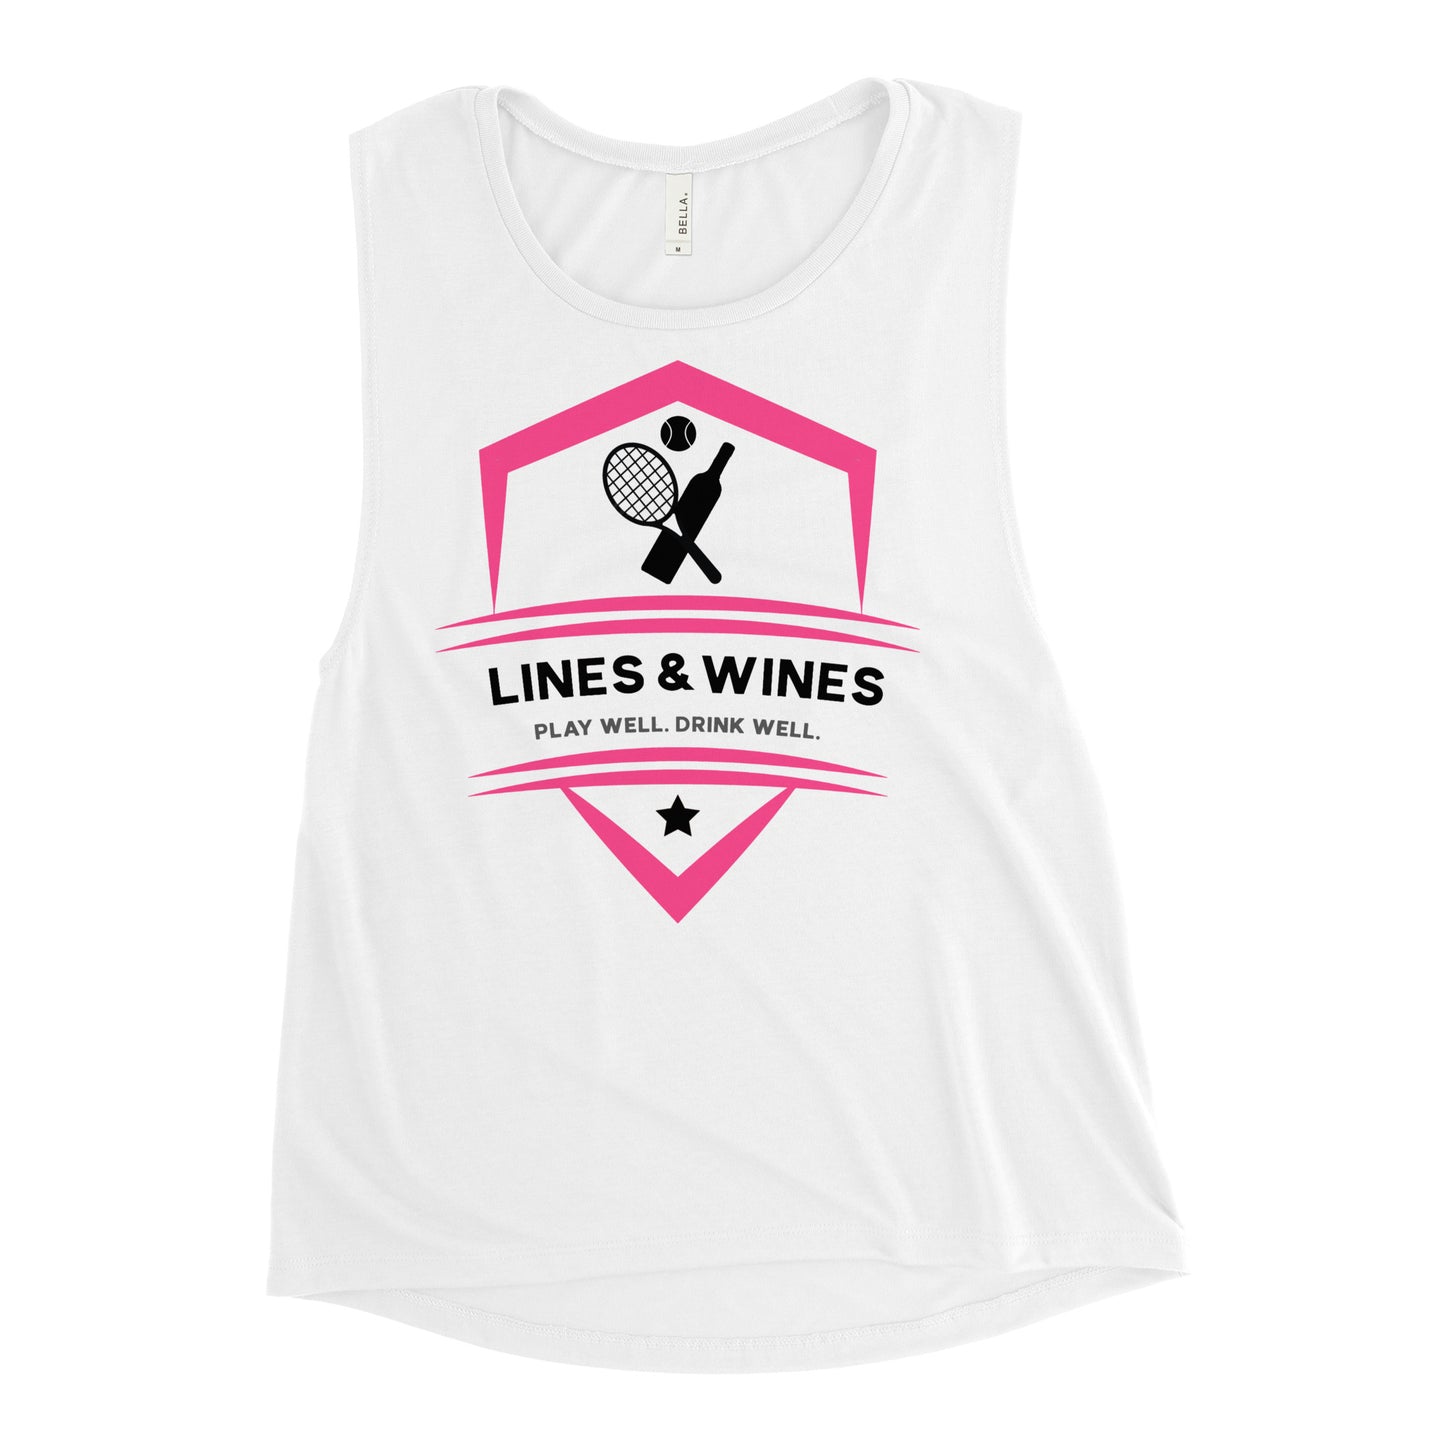 Lines & Wines tennis team Ladies’ muscle tank